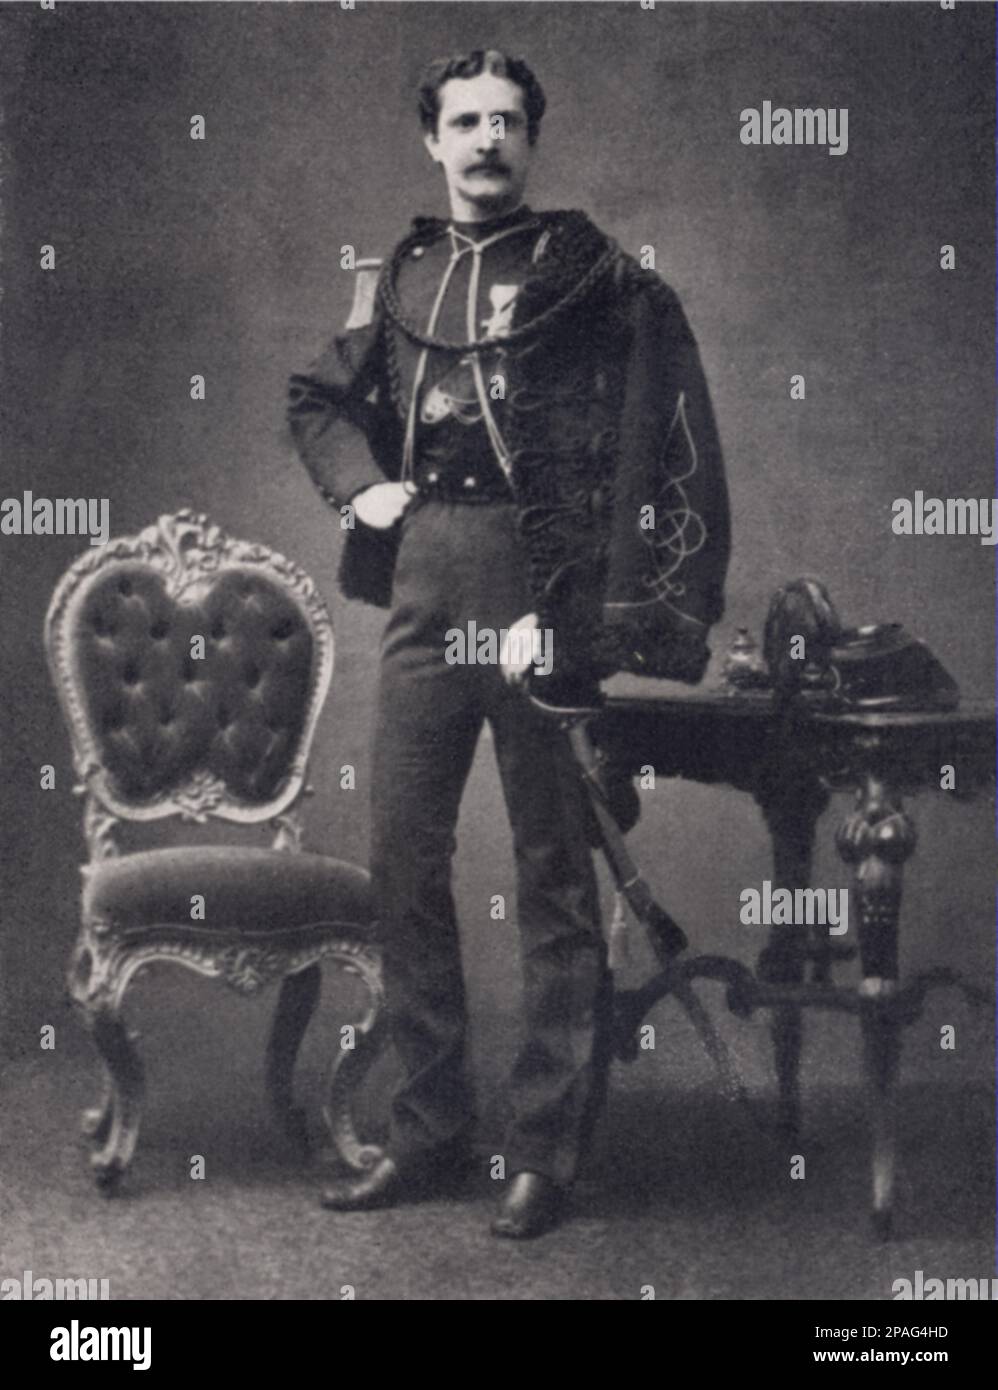 1870 ca , Roma , ITALIA : il marchese Girolamo Theodoli di Sambuci di San Vito e Pisoniano ( 1846-1926 ), sposato con la marchesa CRISTINA MARIA THEODOLI (nata principessa ALTIERI CICILIANO di Oriolo, Roma 1852 - 1930 ) - Nobiltà italiana - nobiltà - ritrato - ritratto - baffi - baffi - mustache - uniforme divisa militare - cavalleria - ---- ARCHIVIO GBB Foto Stock